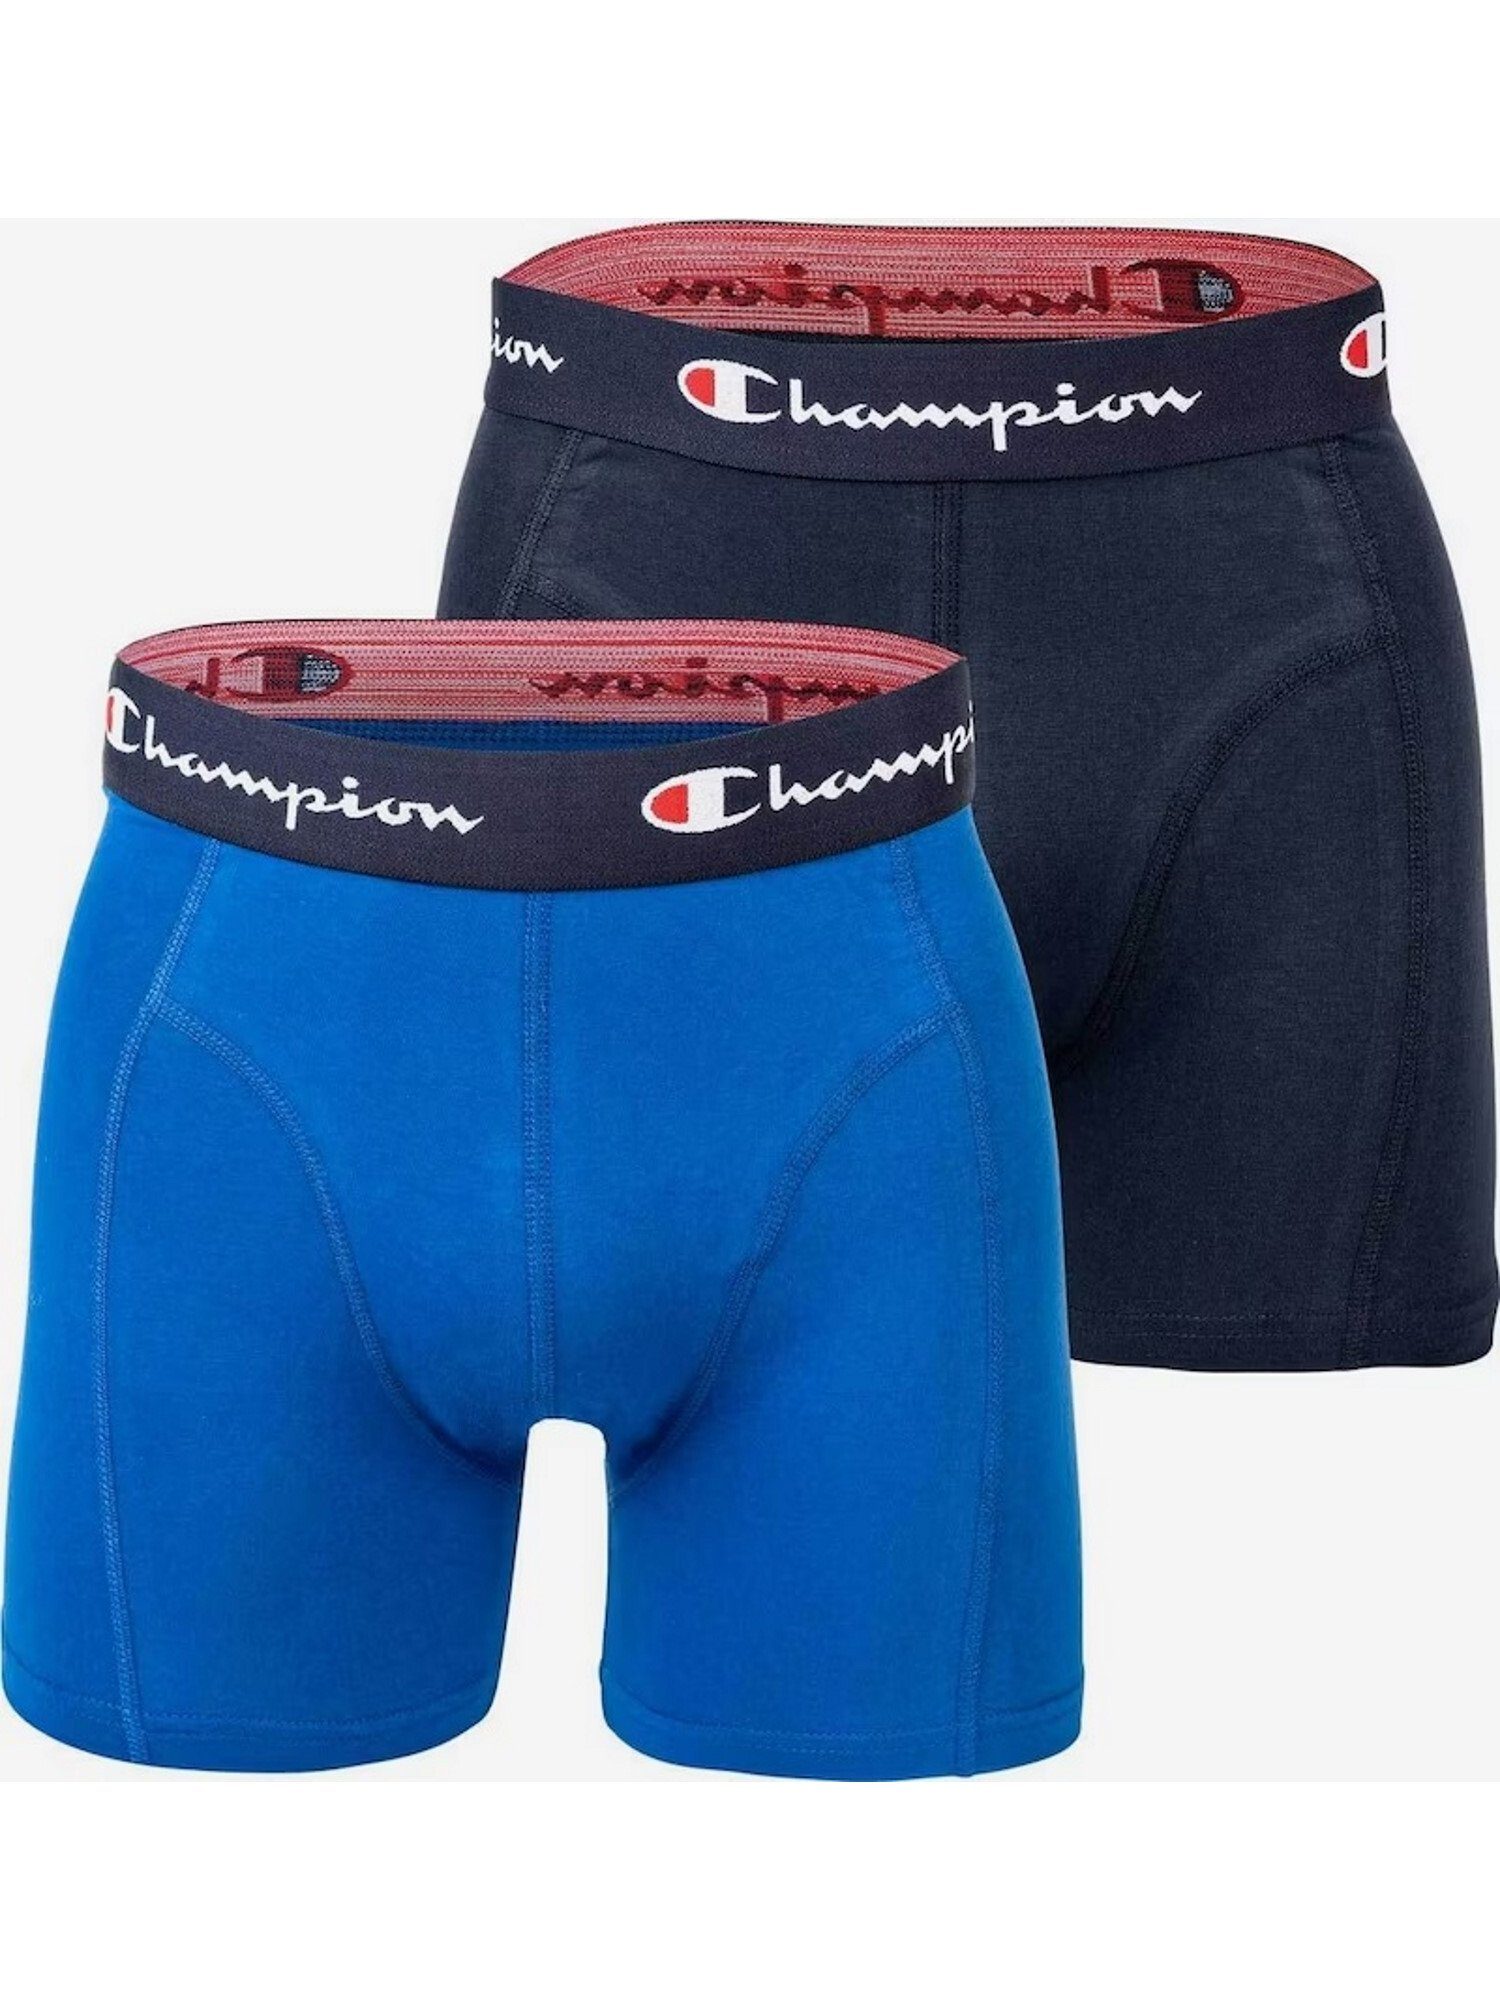 Champion Doppelpack Basic Boxershorts Boxershorts blau Trunks